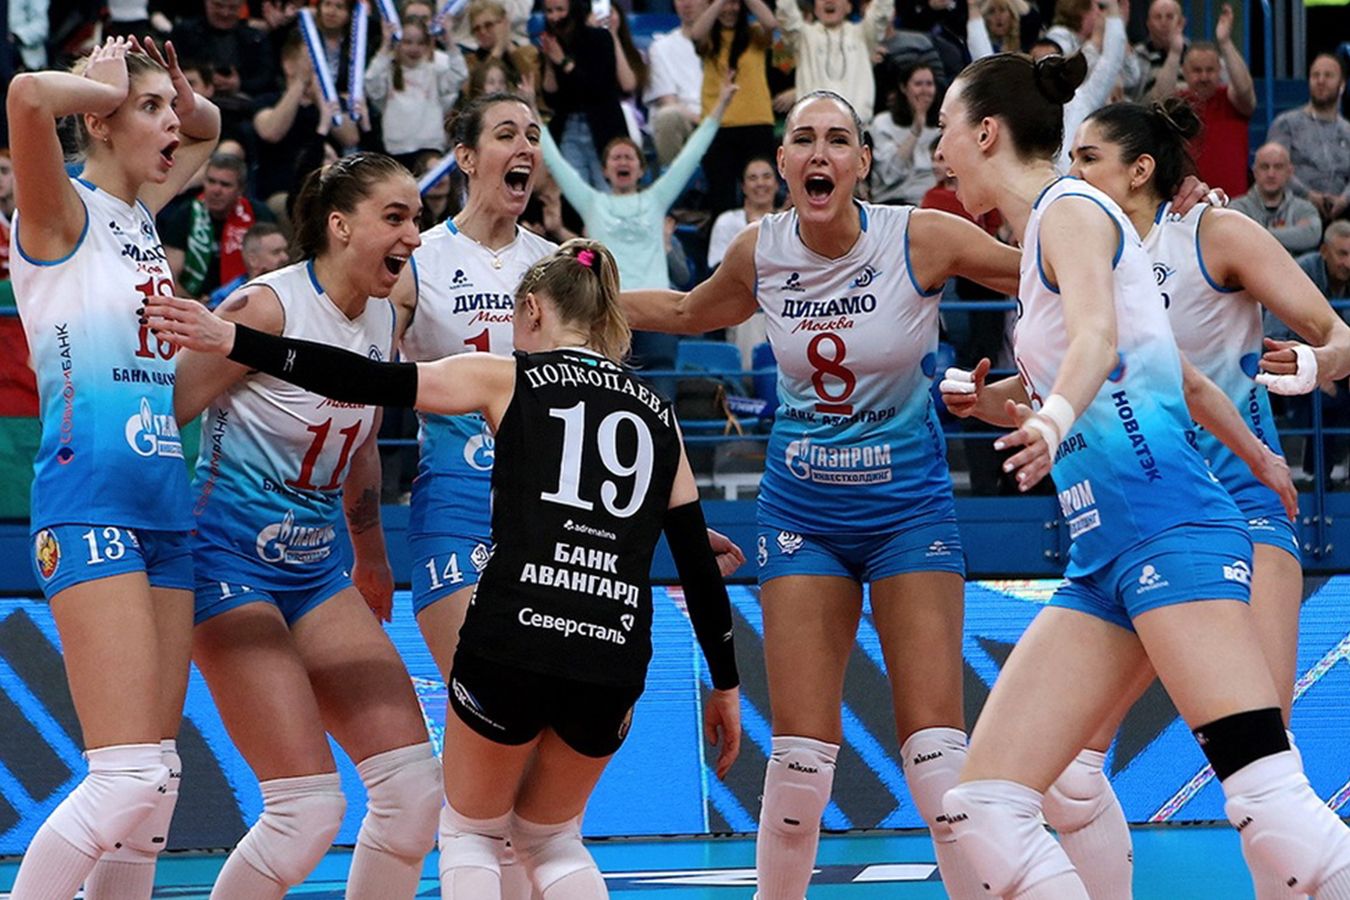 Отобьётся ли «Динамо» от конкурентов? Самое важное о старте женской волейбольной Суперлиги